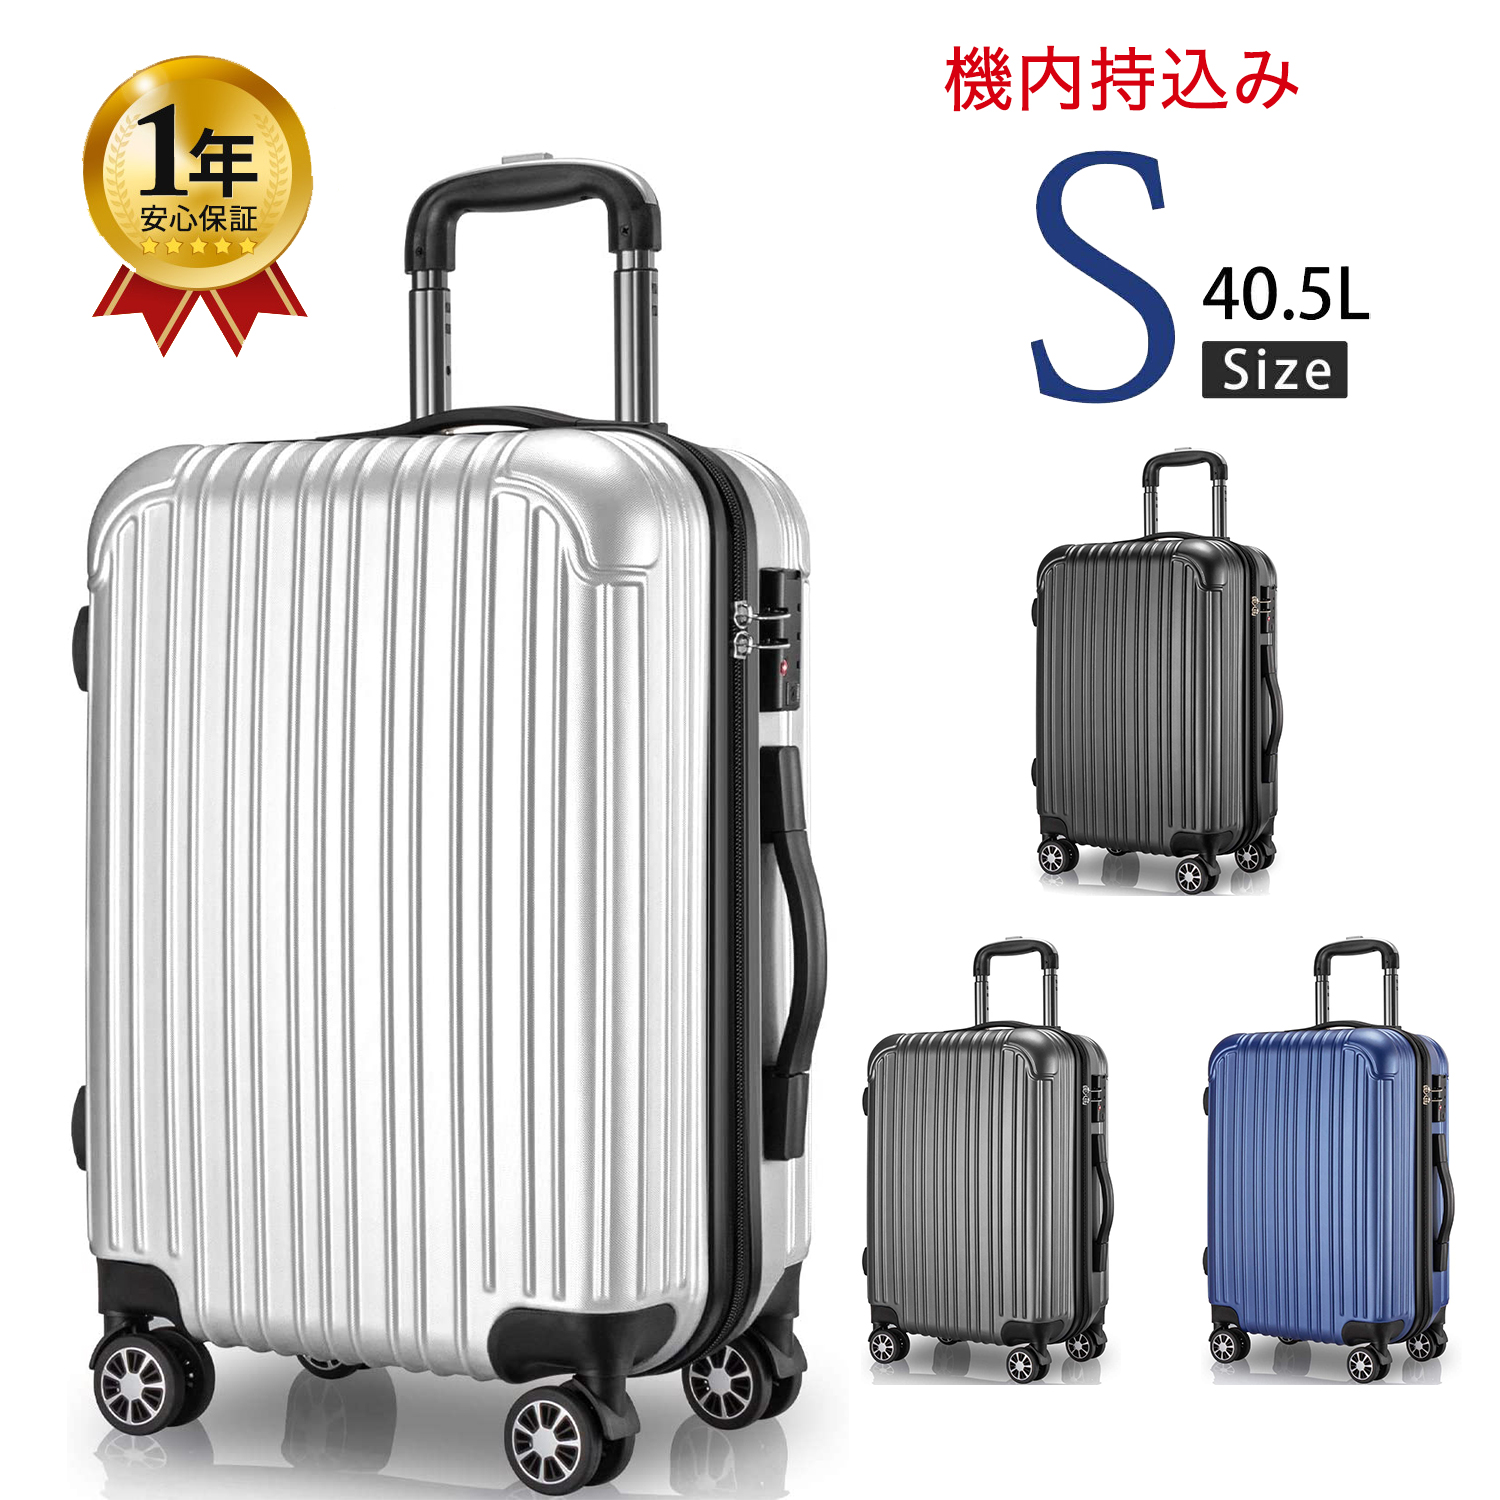 スーツケース 機内持ち込み S サイズ キャリーケース キャリーバッグ 2泊3日 旅行 ビジネス 出張 カバン バッグ 小型 おしゃれ 静音  ファスナー 40.5L :spb6s:スマーゲン 通販 